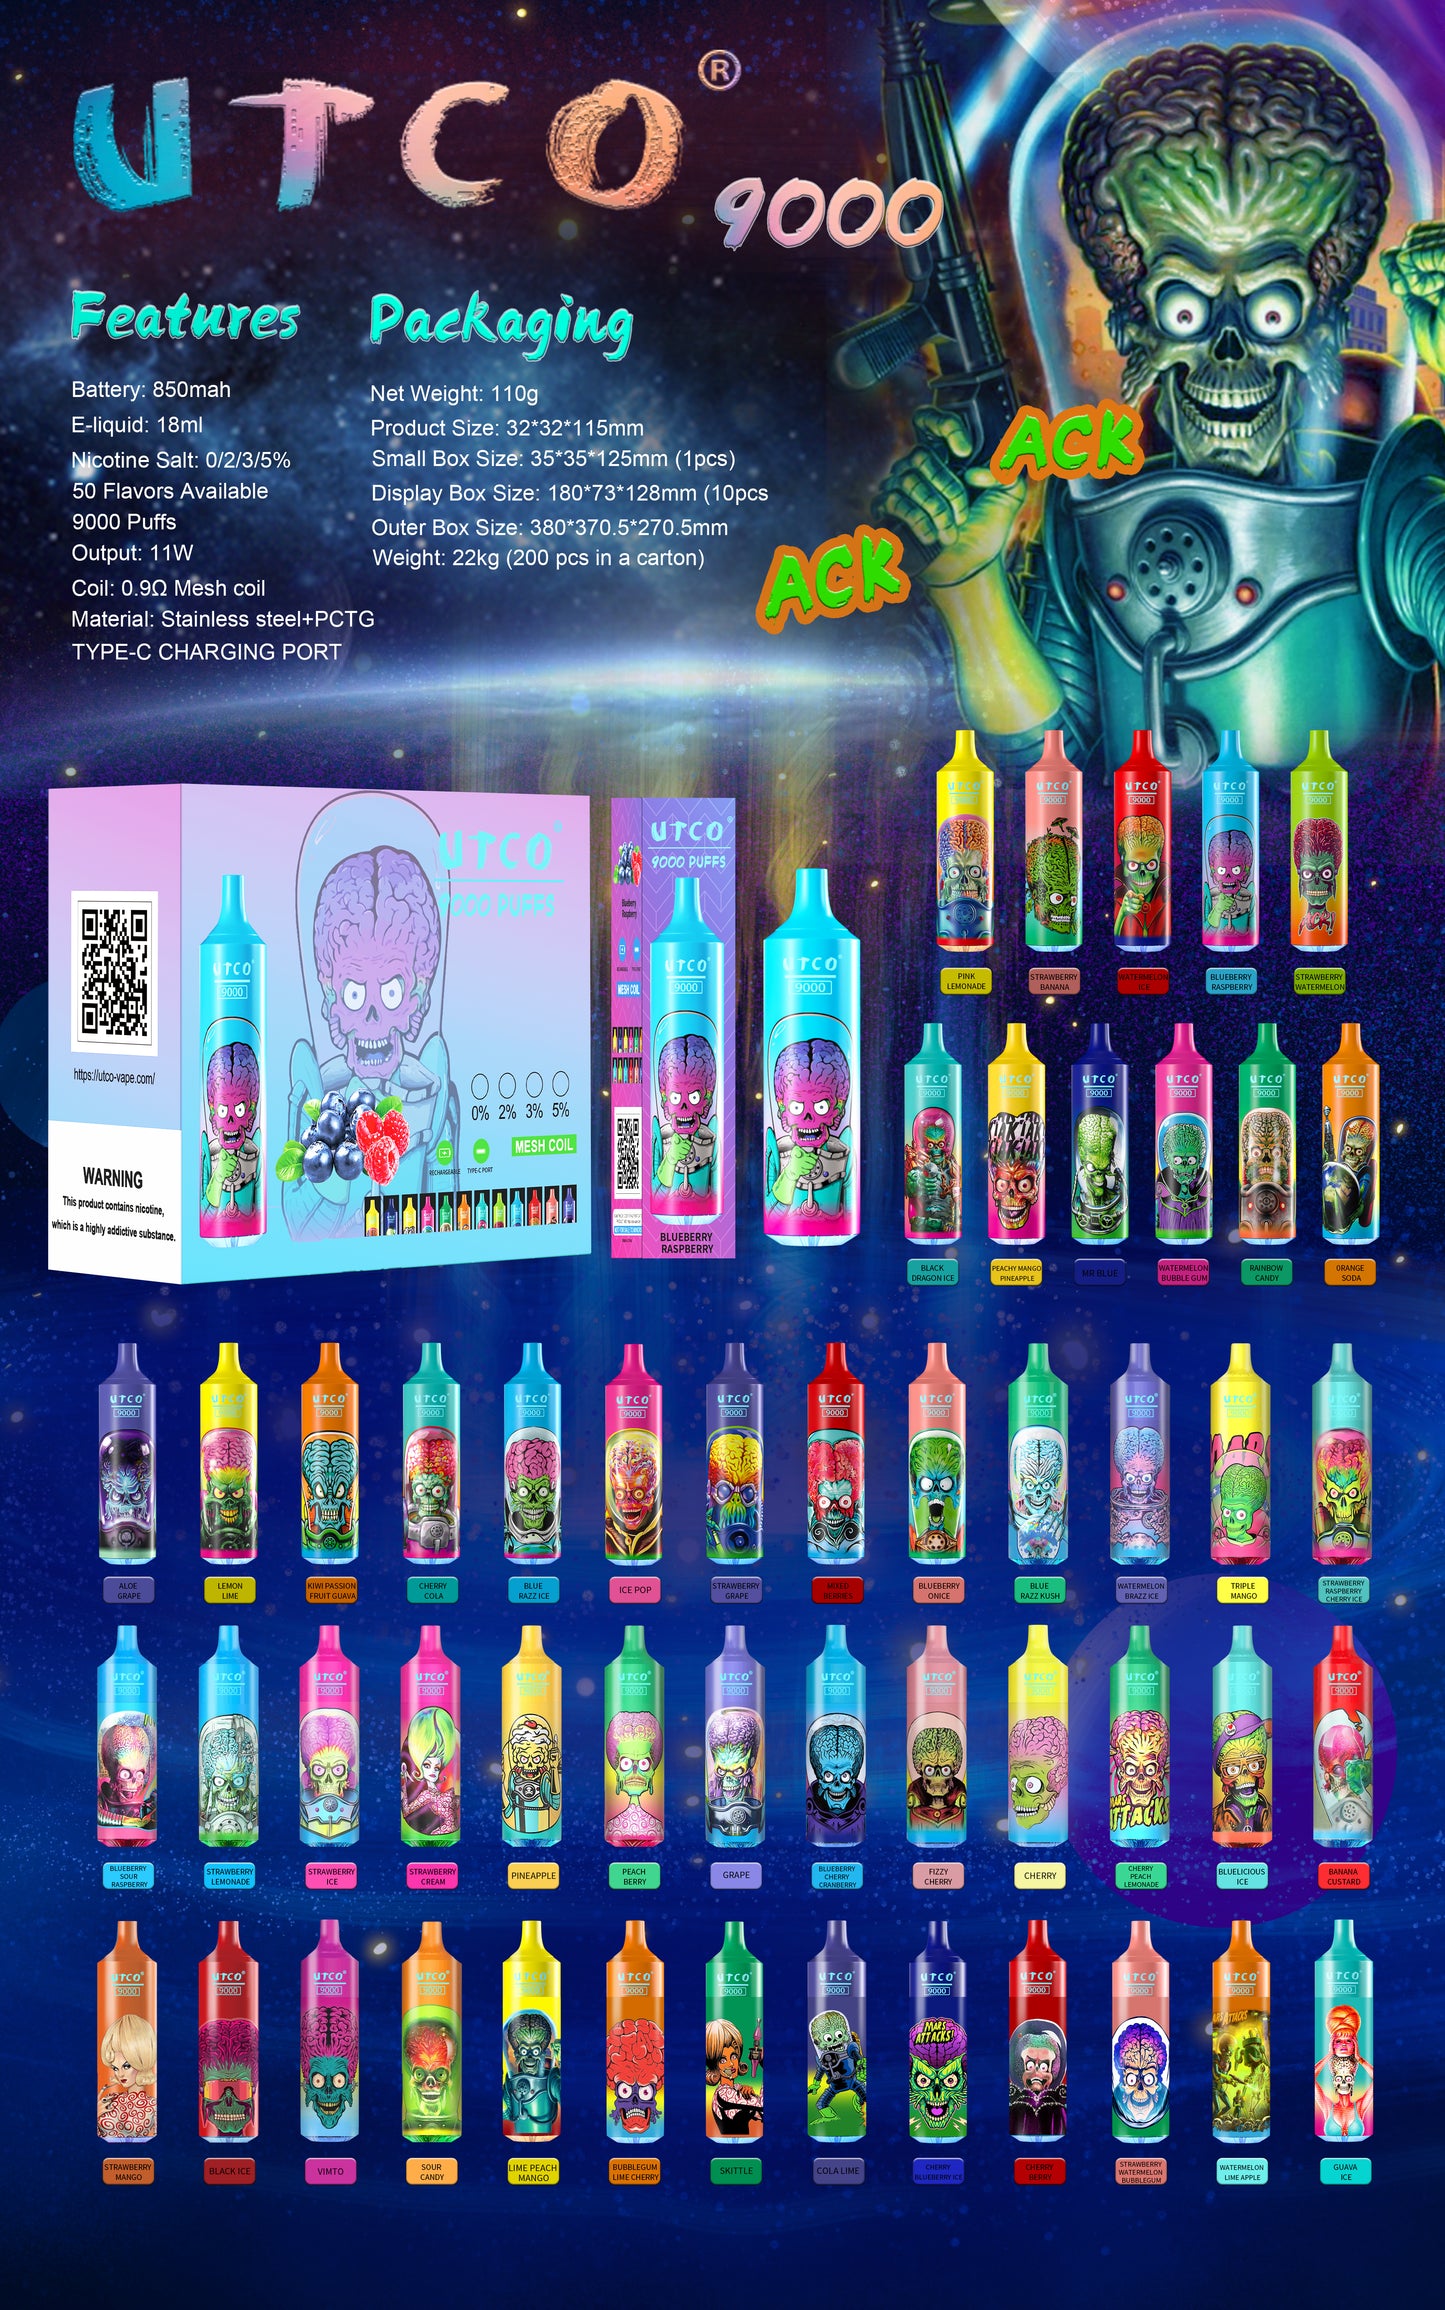 UTCO Aliens 9000 Einweg E-Zigarette Disposable Kit wiederaufladbar - Kaufen Sie 4 Stück Einweg Kits, werden Sie 1 Stück* UTCO Gorilla 7000(50mg) gratis (Zufällige Geschmacksrichtungen) erhalten